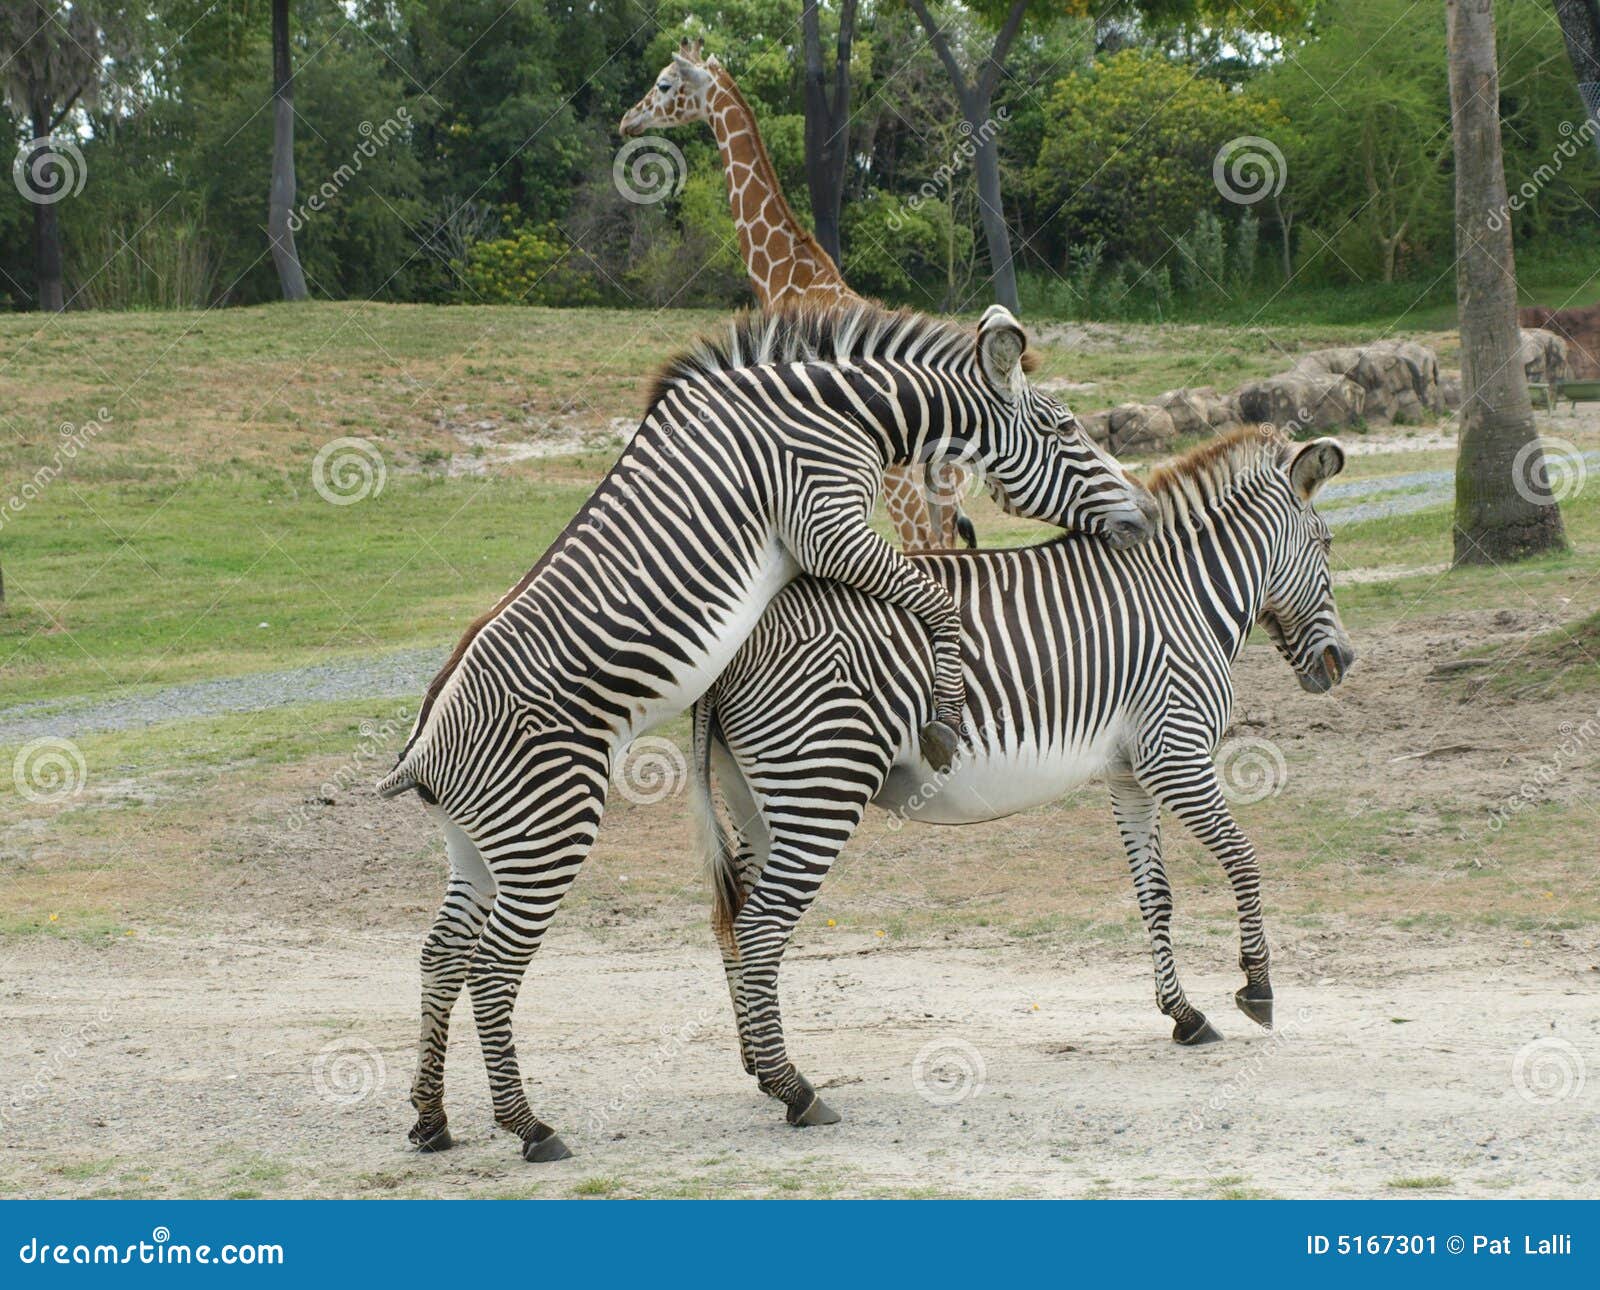 Самка гоняет самца. Зебра спаривается. Зебры совокупляются. Зебры сношаются. Спаривание зебры и лошади.